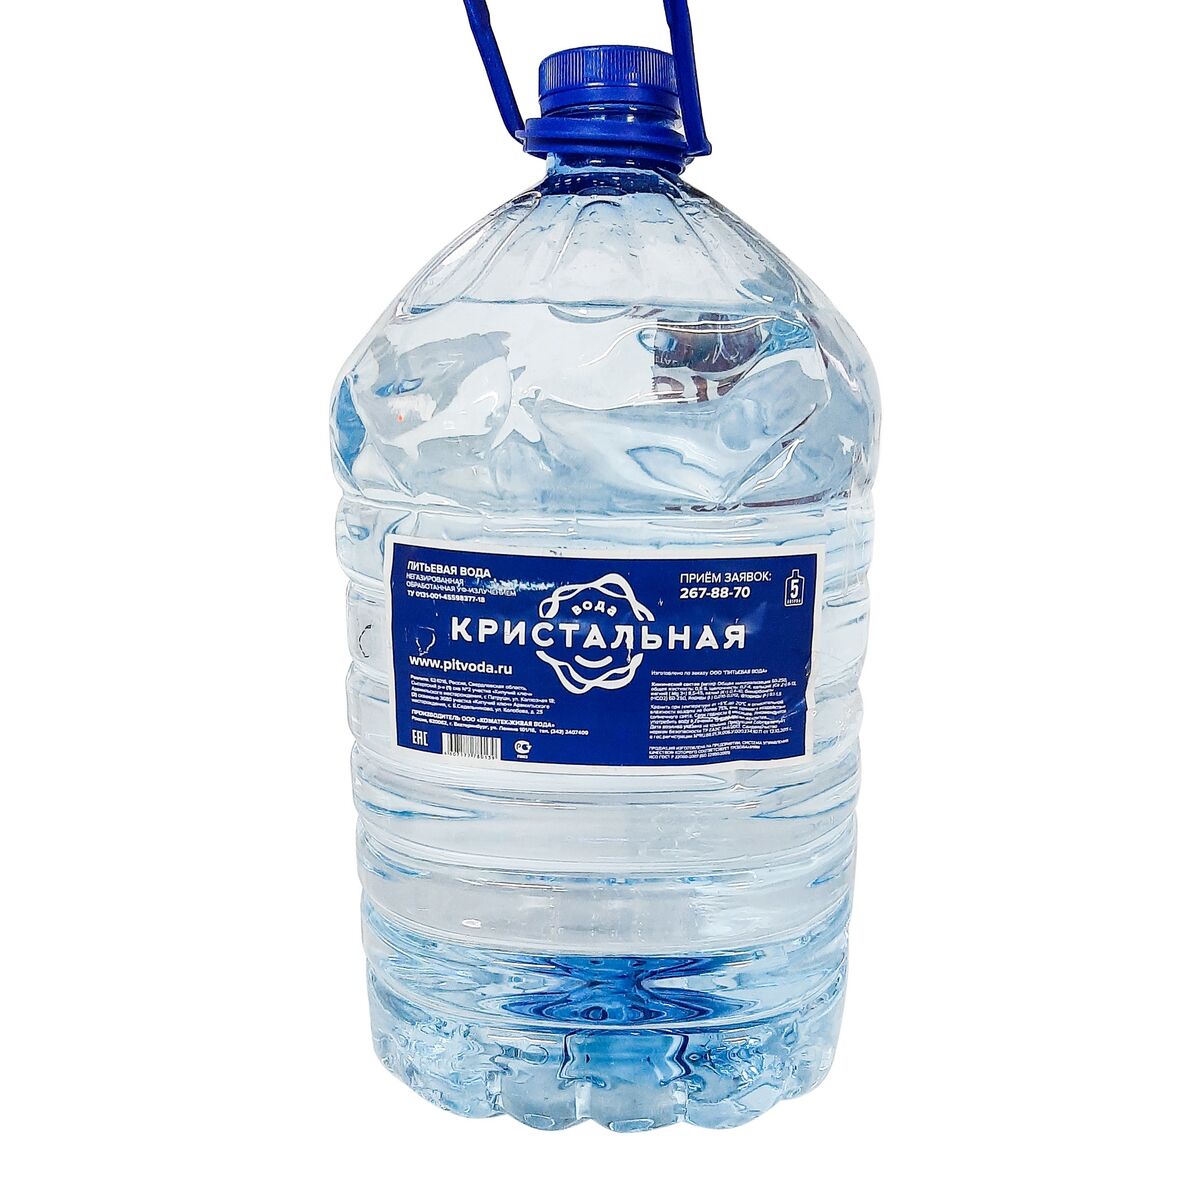 Телефон воды кристальная. Питье воды. Питьевая вода Кристальная. Вода питьевая негазированная. Обработанная питьевая вода этикетка.